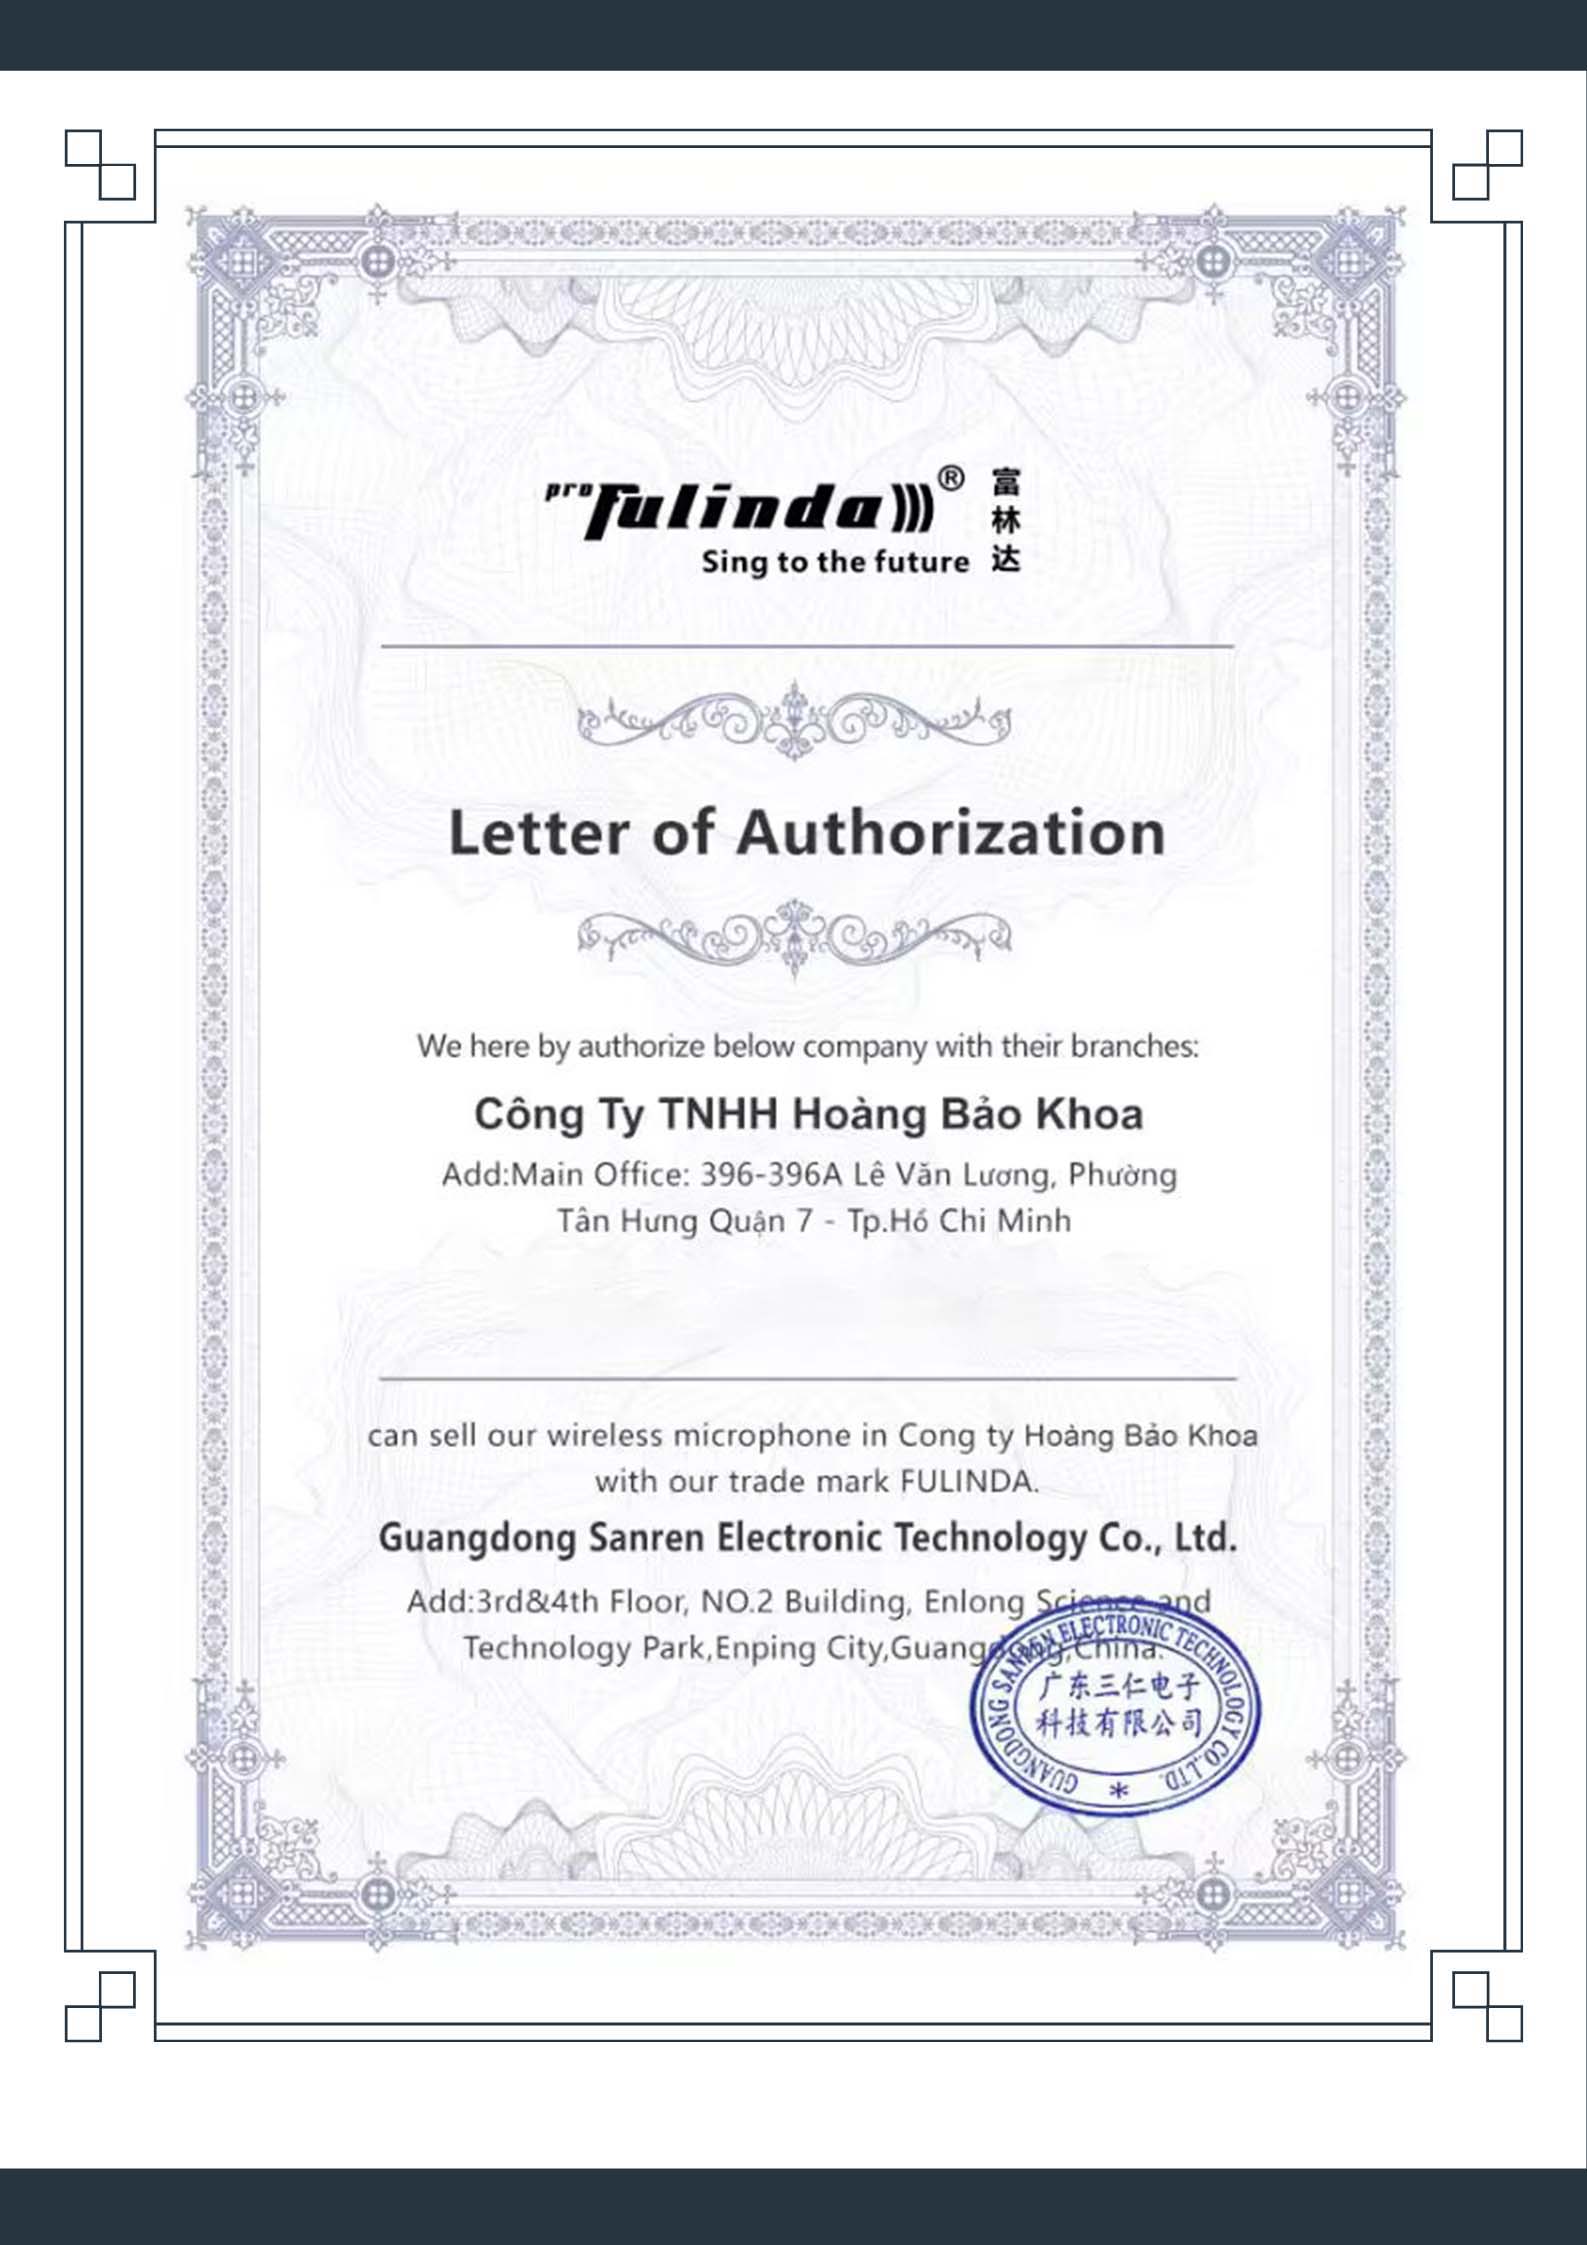 Fulinda distributor certificate